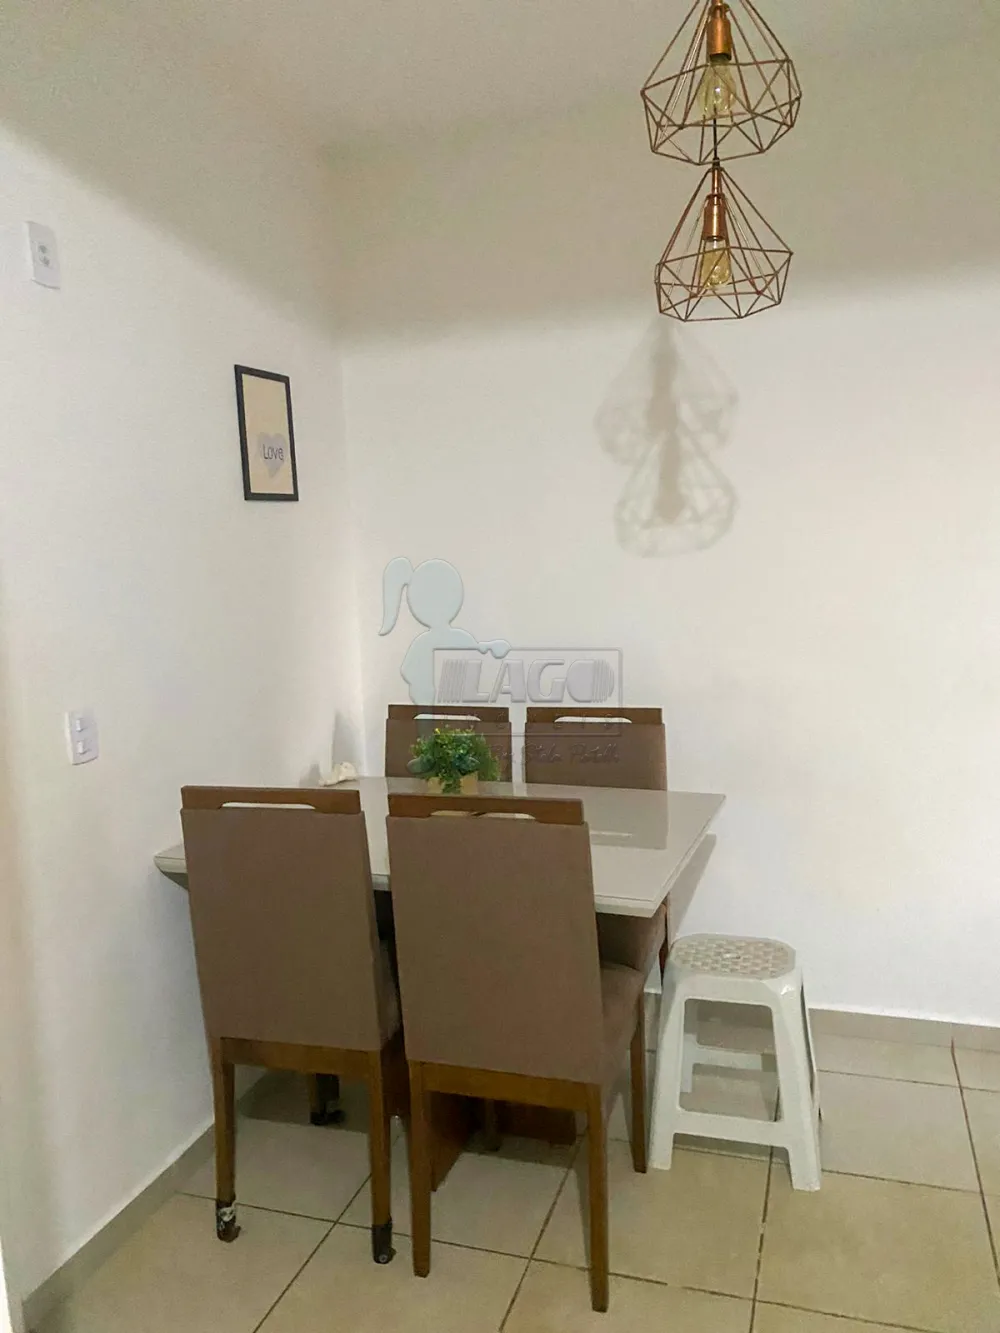 Comprar Apartamento / Padrão em Ribeirão Preto R$ 270.000,00 - Foto 4